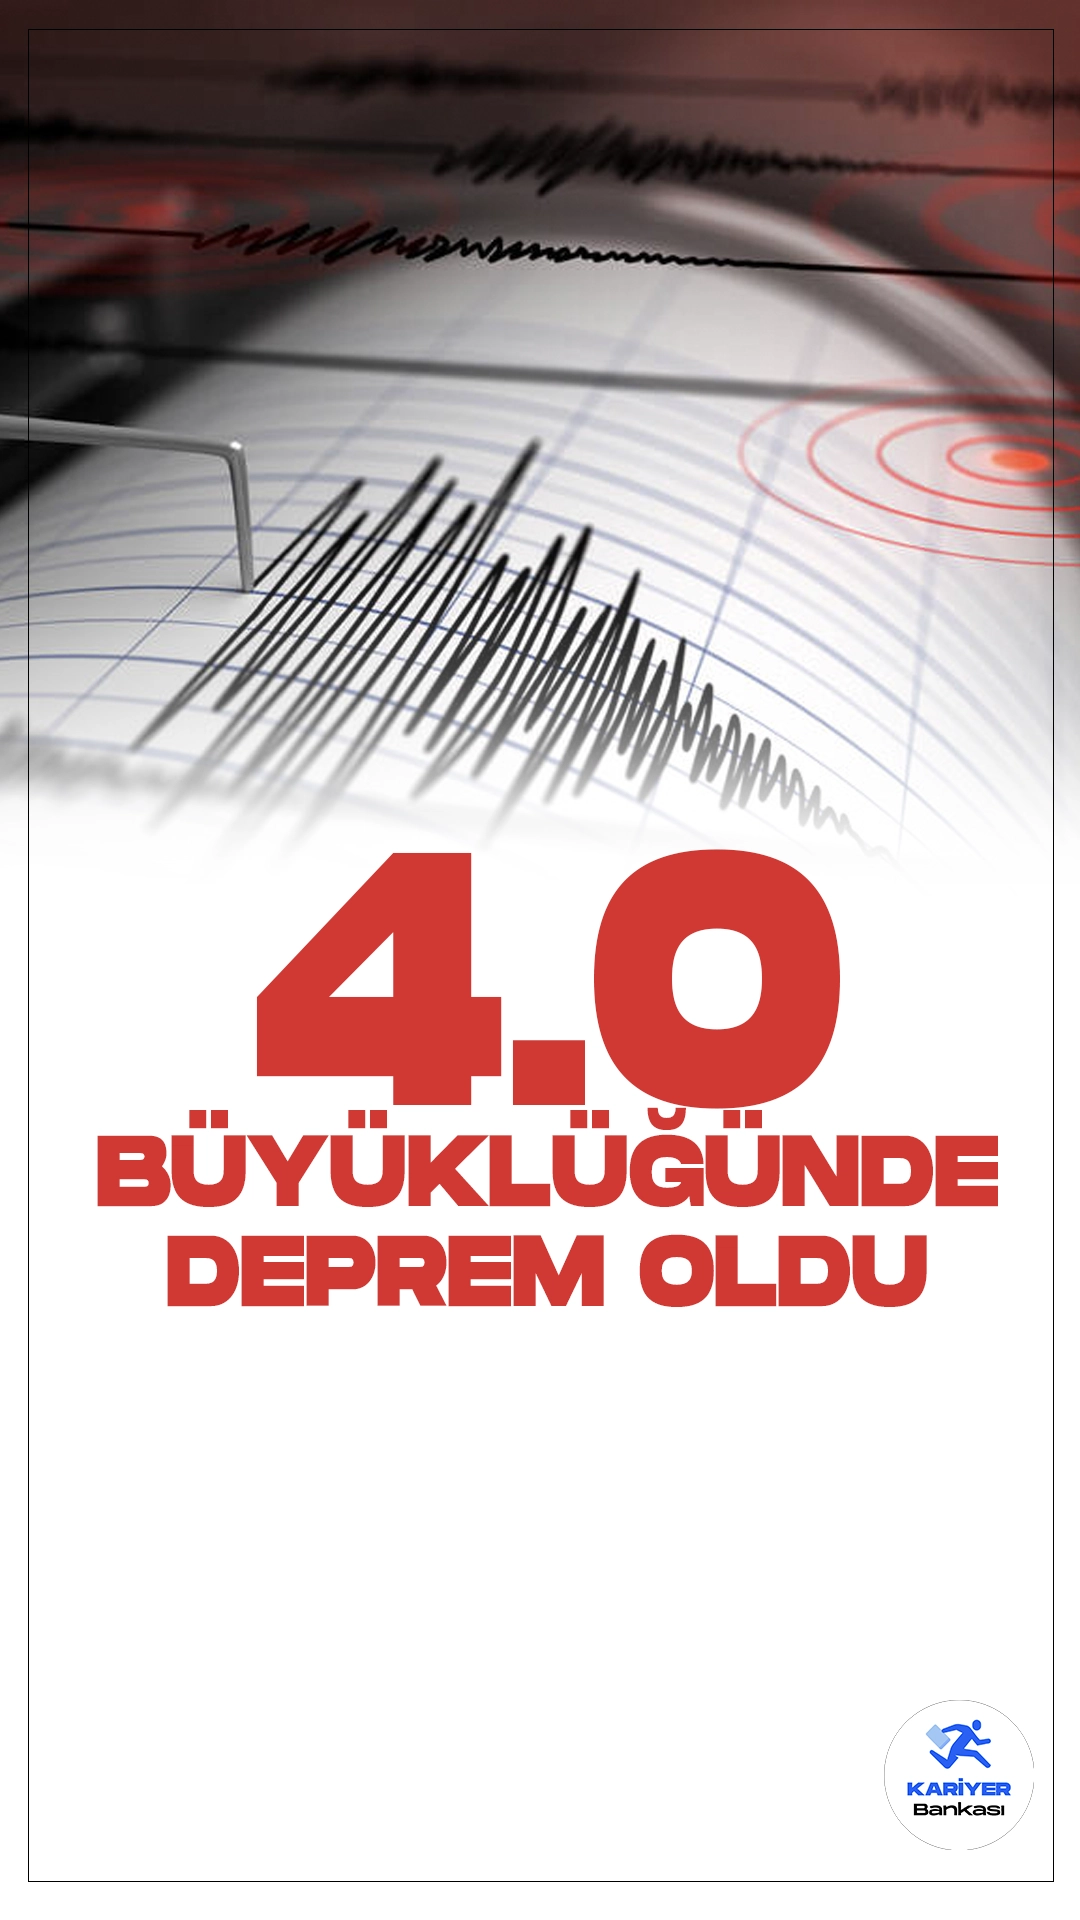 Adana'da 4.0 Büyüklüğünde Deprem Meydana Geldi. İçişleri Bakanlığı Afet ve Acil Durum Yönetimi Başkanlığı Deprem Dairesi tarafından yayımlana son dakika verilerine göre, Adana'nın Saimbeyli ilçesinde 4.0 büyüklüğünde deprem meydana geldiği aktarıldı.